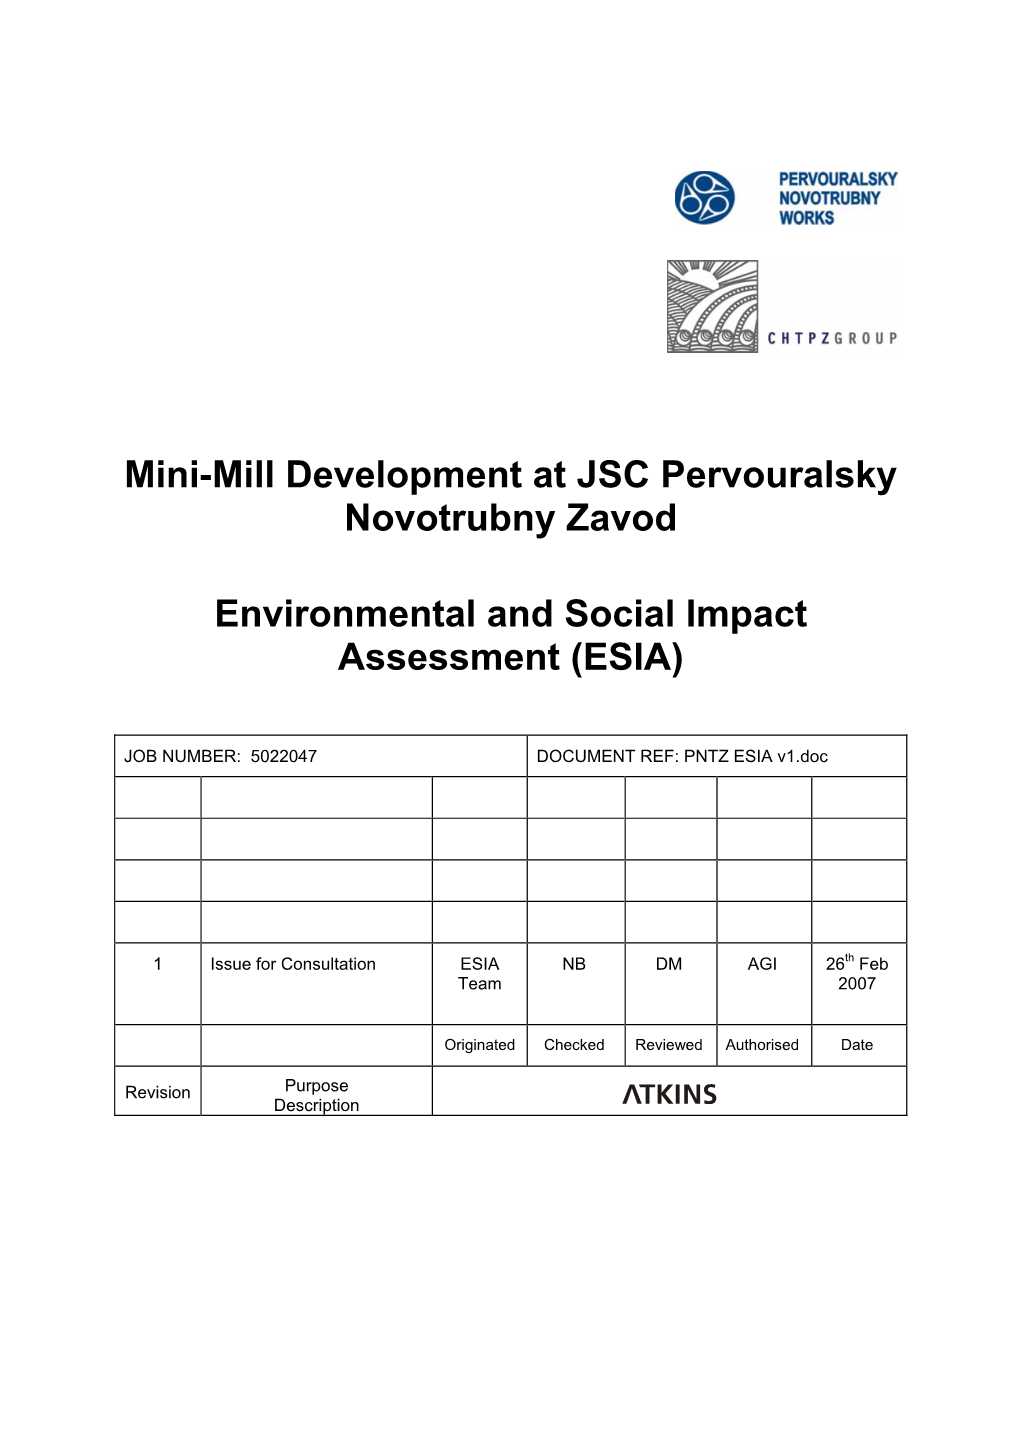 Mini-Mill Development at JSC Pervouralsky Novotrubny Zavod